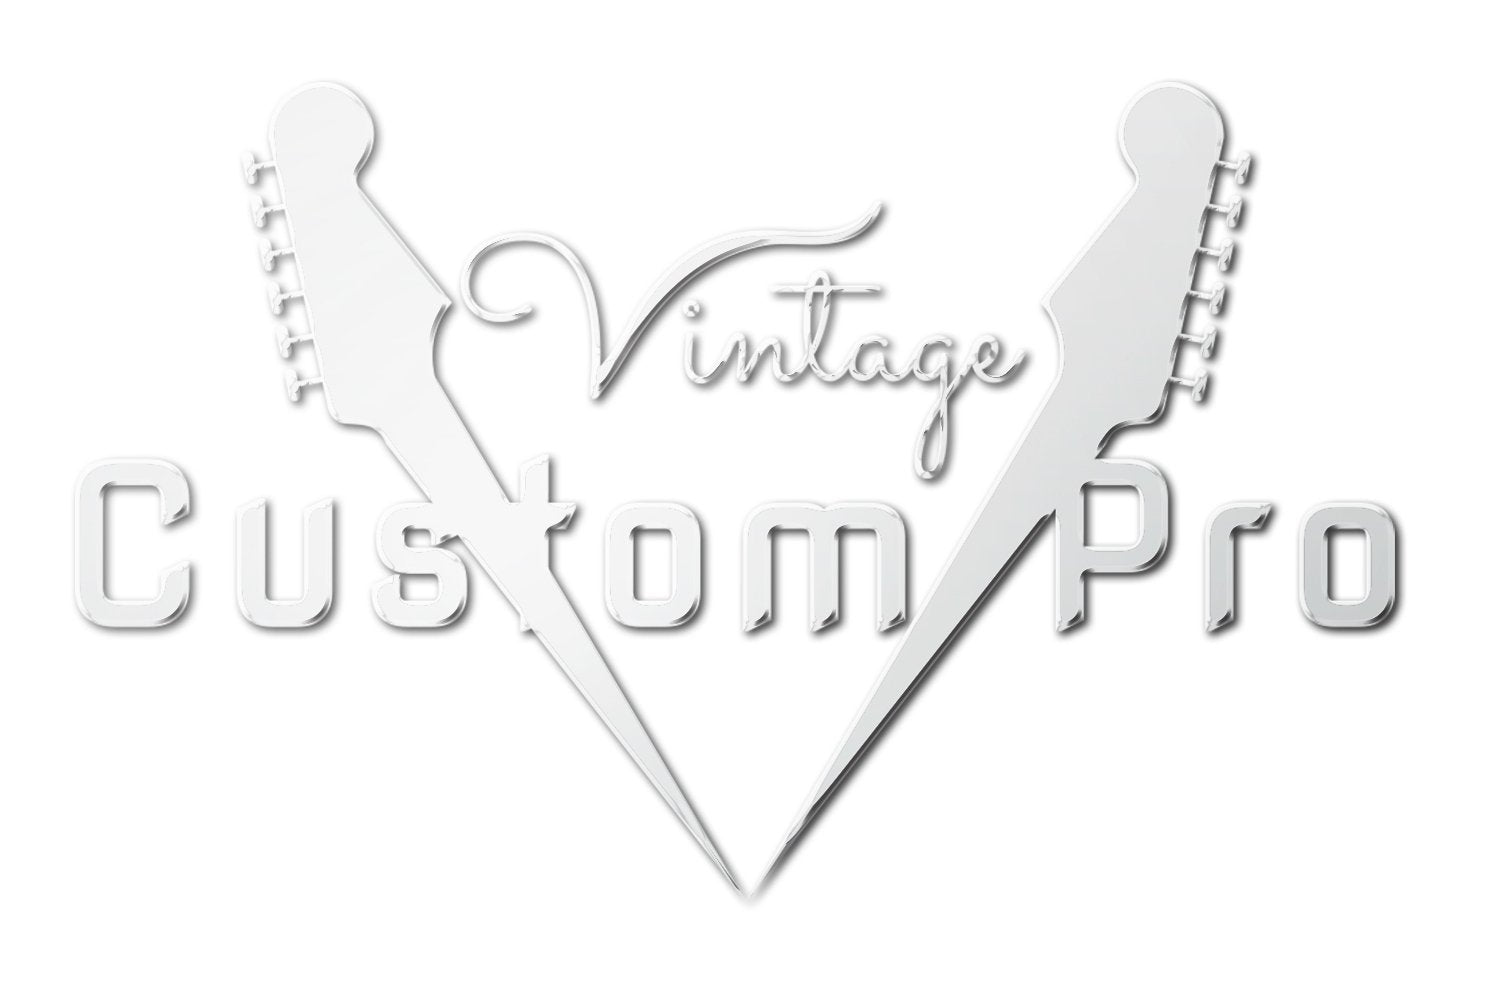 Vintage* V6M24LB Electric Guitar, Electric Guitar for sale at Richards Guitars.